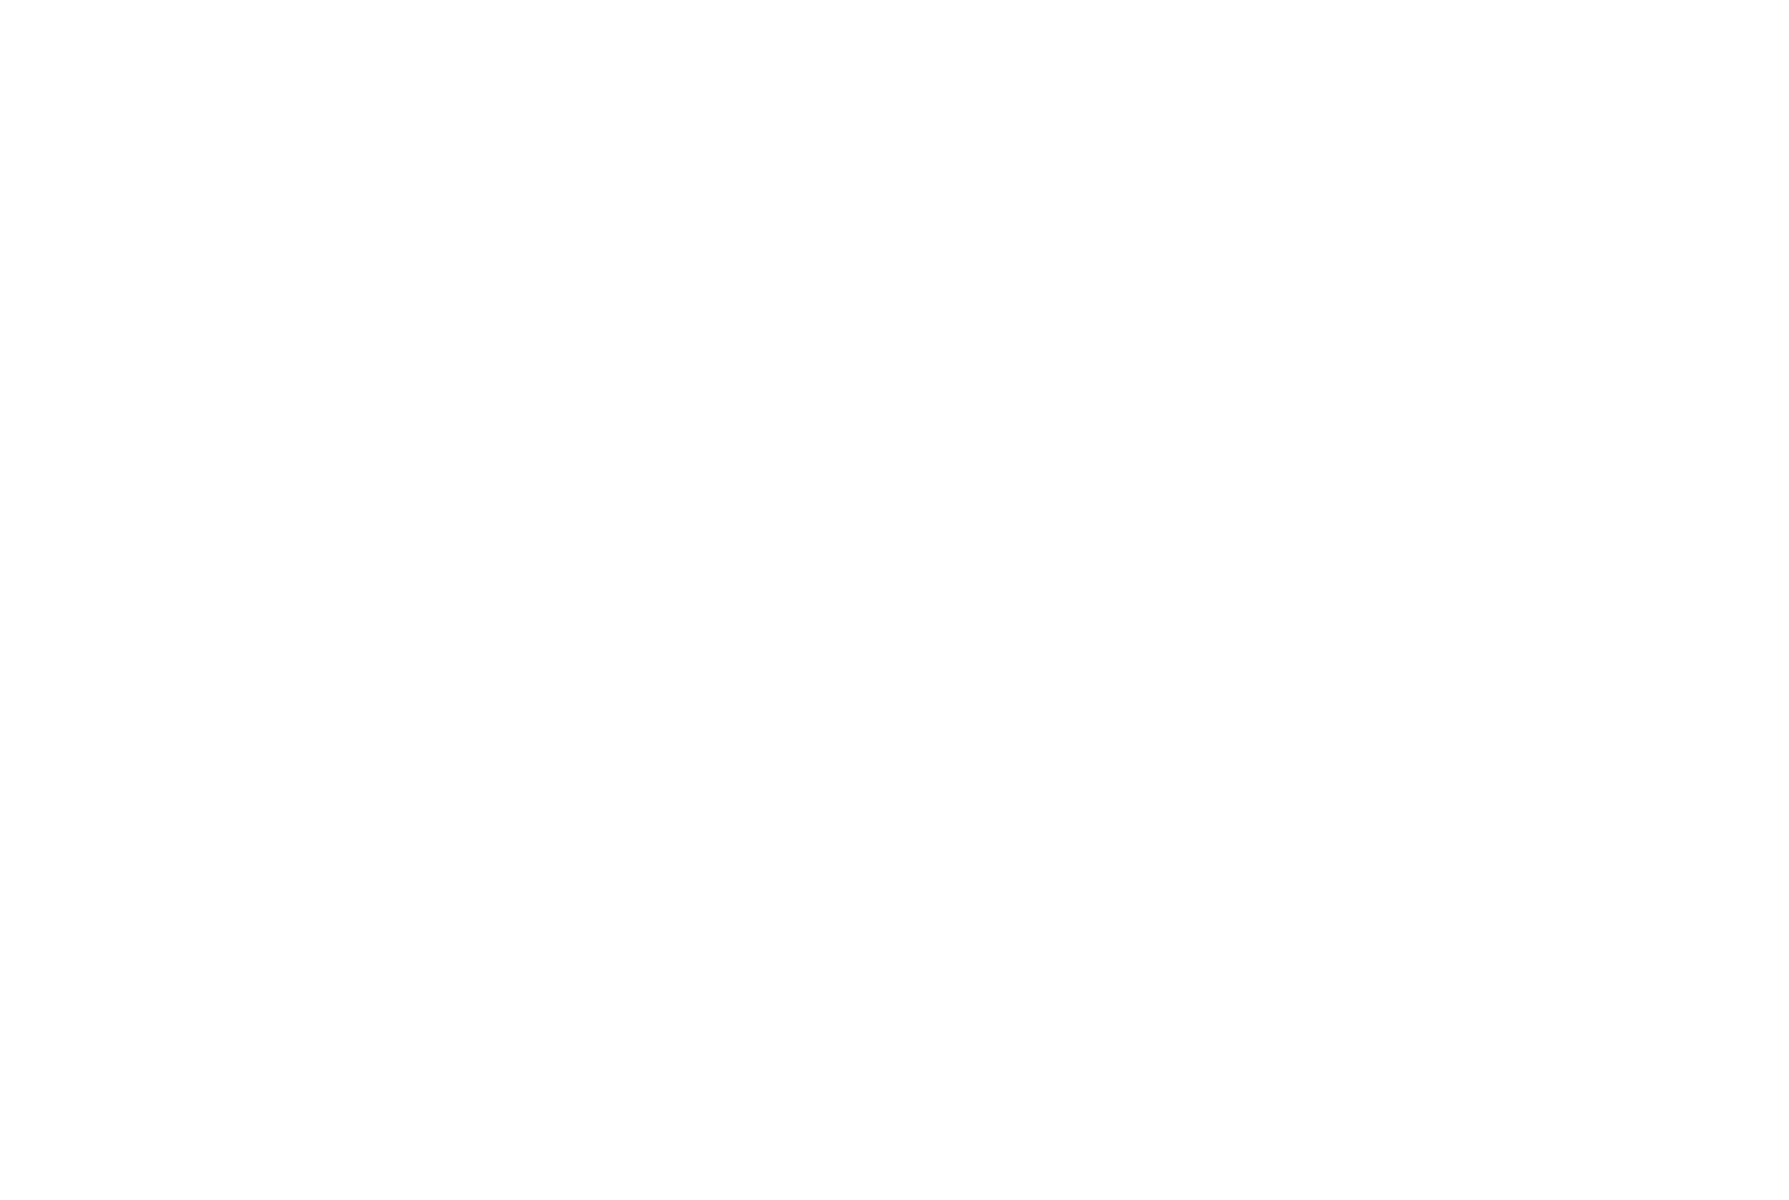 яблоко - логотип iOS на серебристом фоне